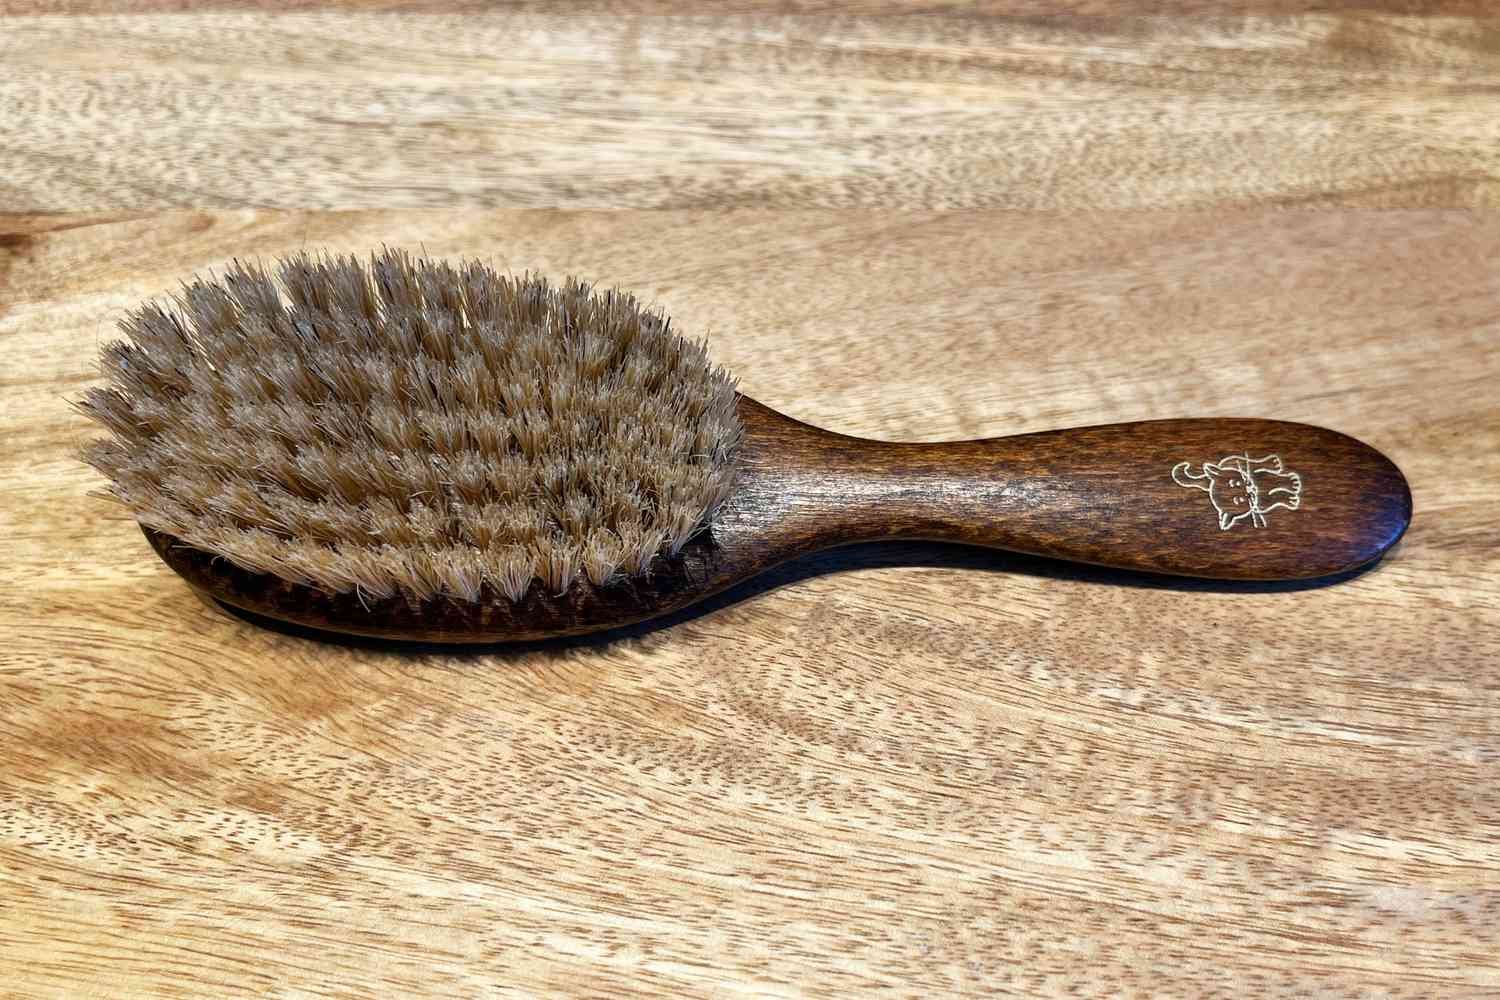 Best Overall Cat Brush: Mars Coat King Boar Bristle Cat Hair Brush